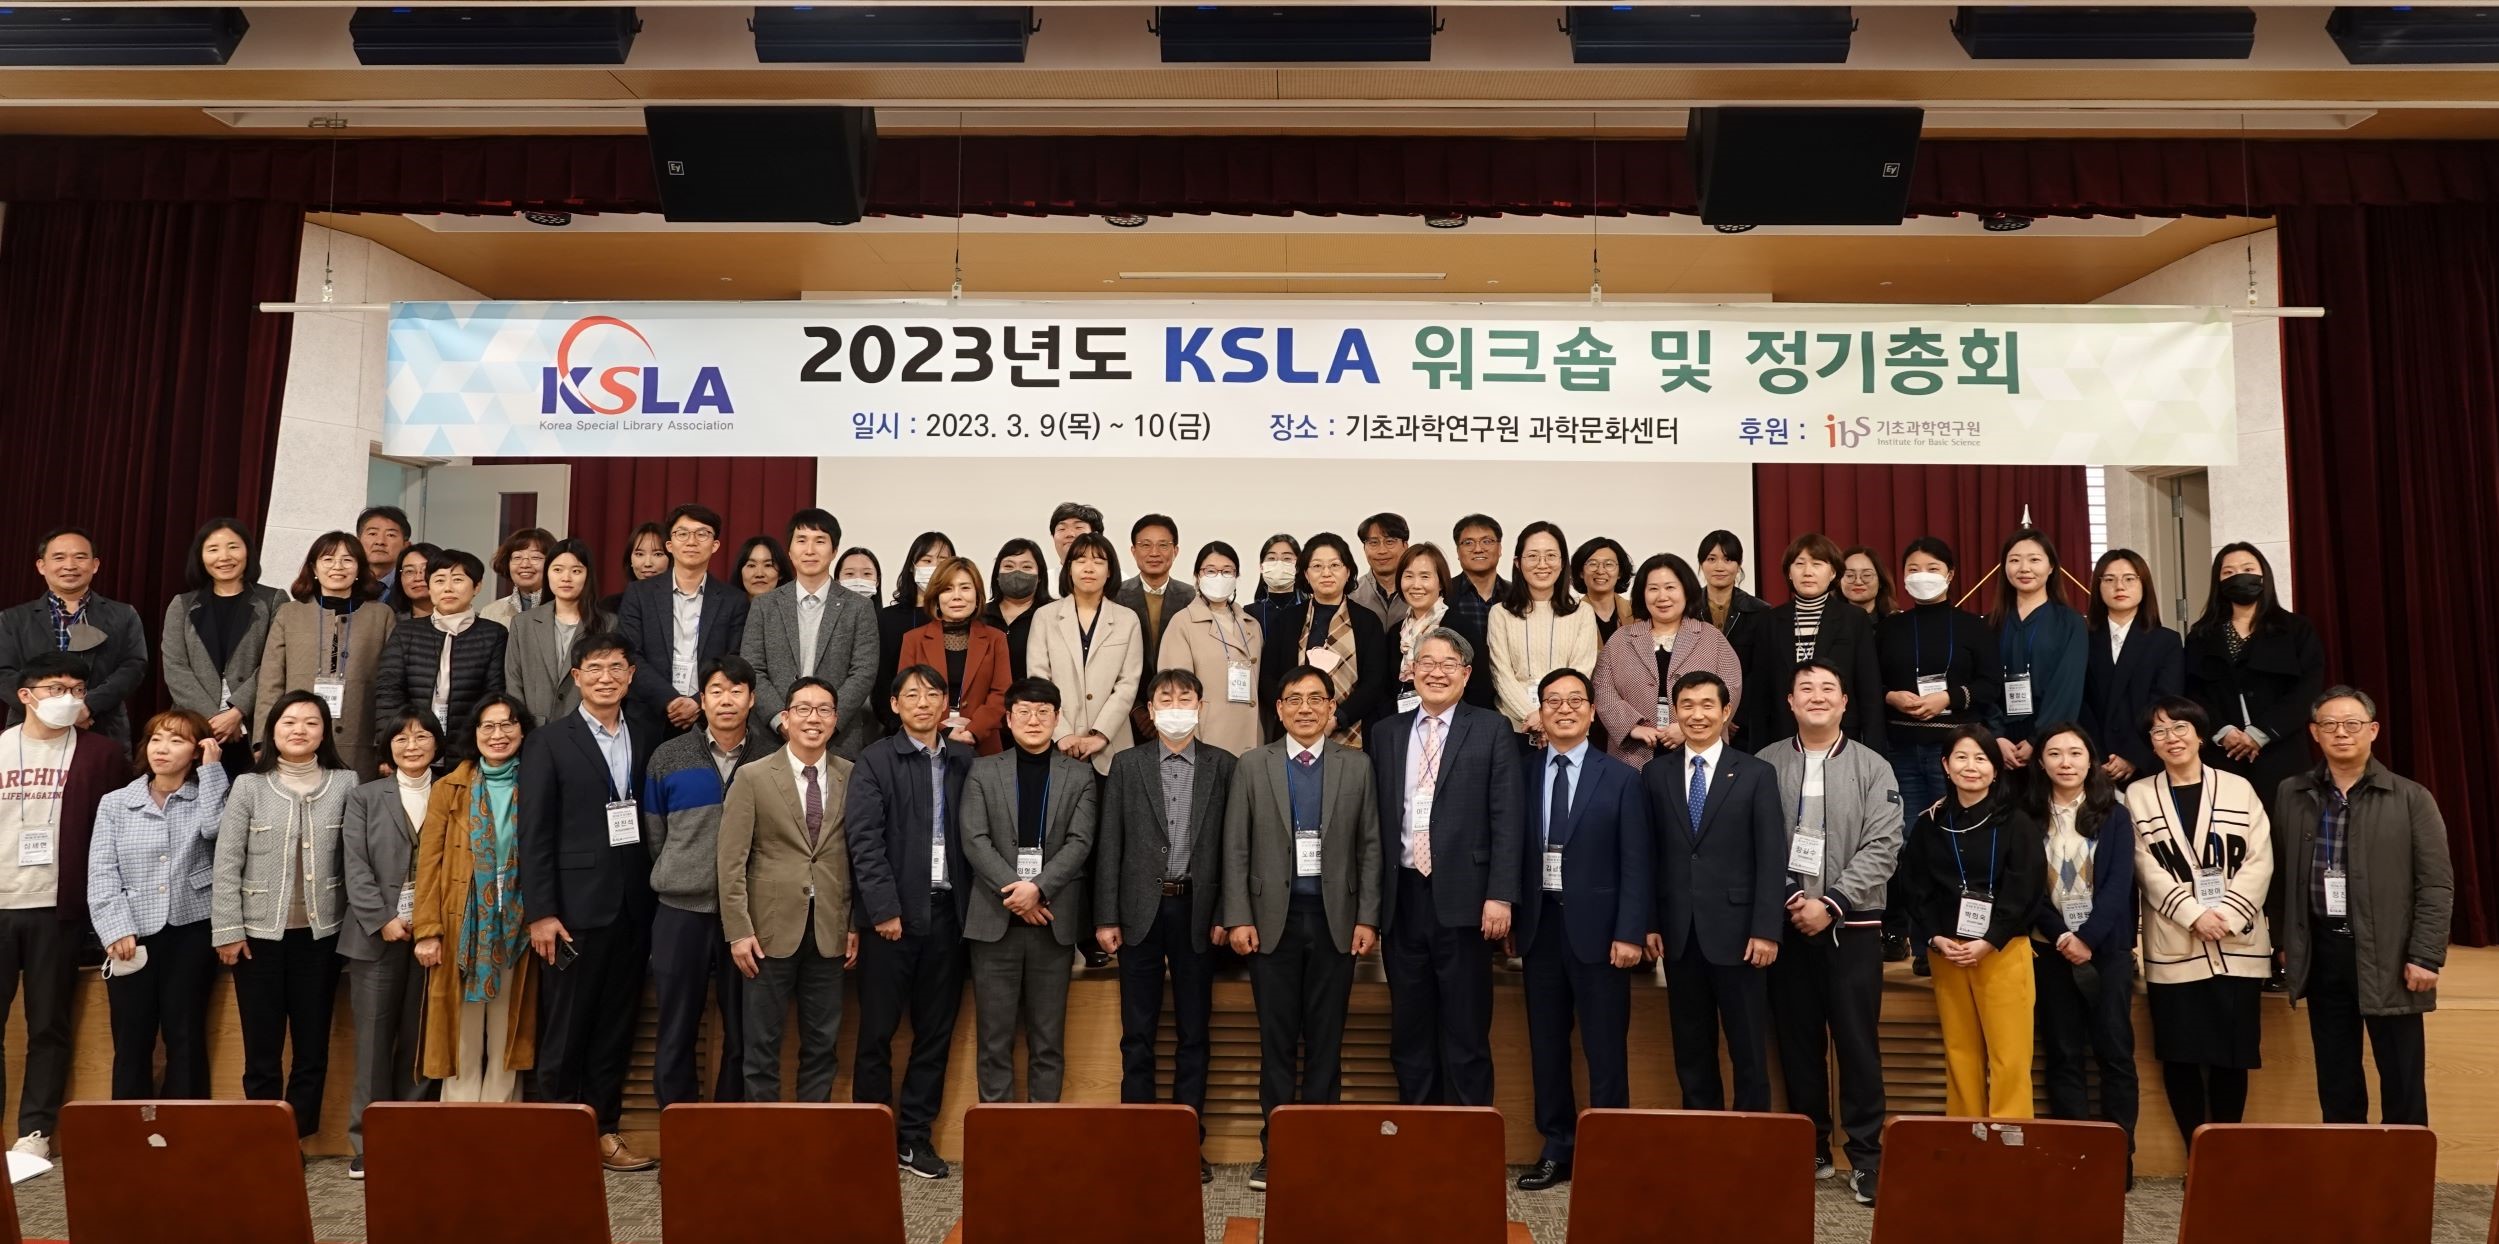 2023 KSLA 워크숍 및 정기총회 단체사진.JPG